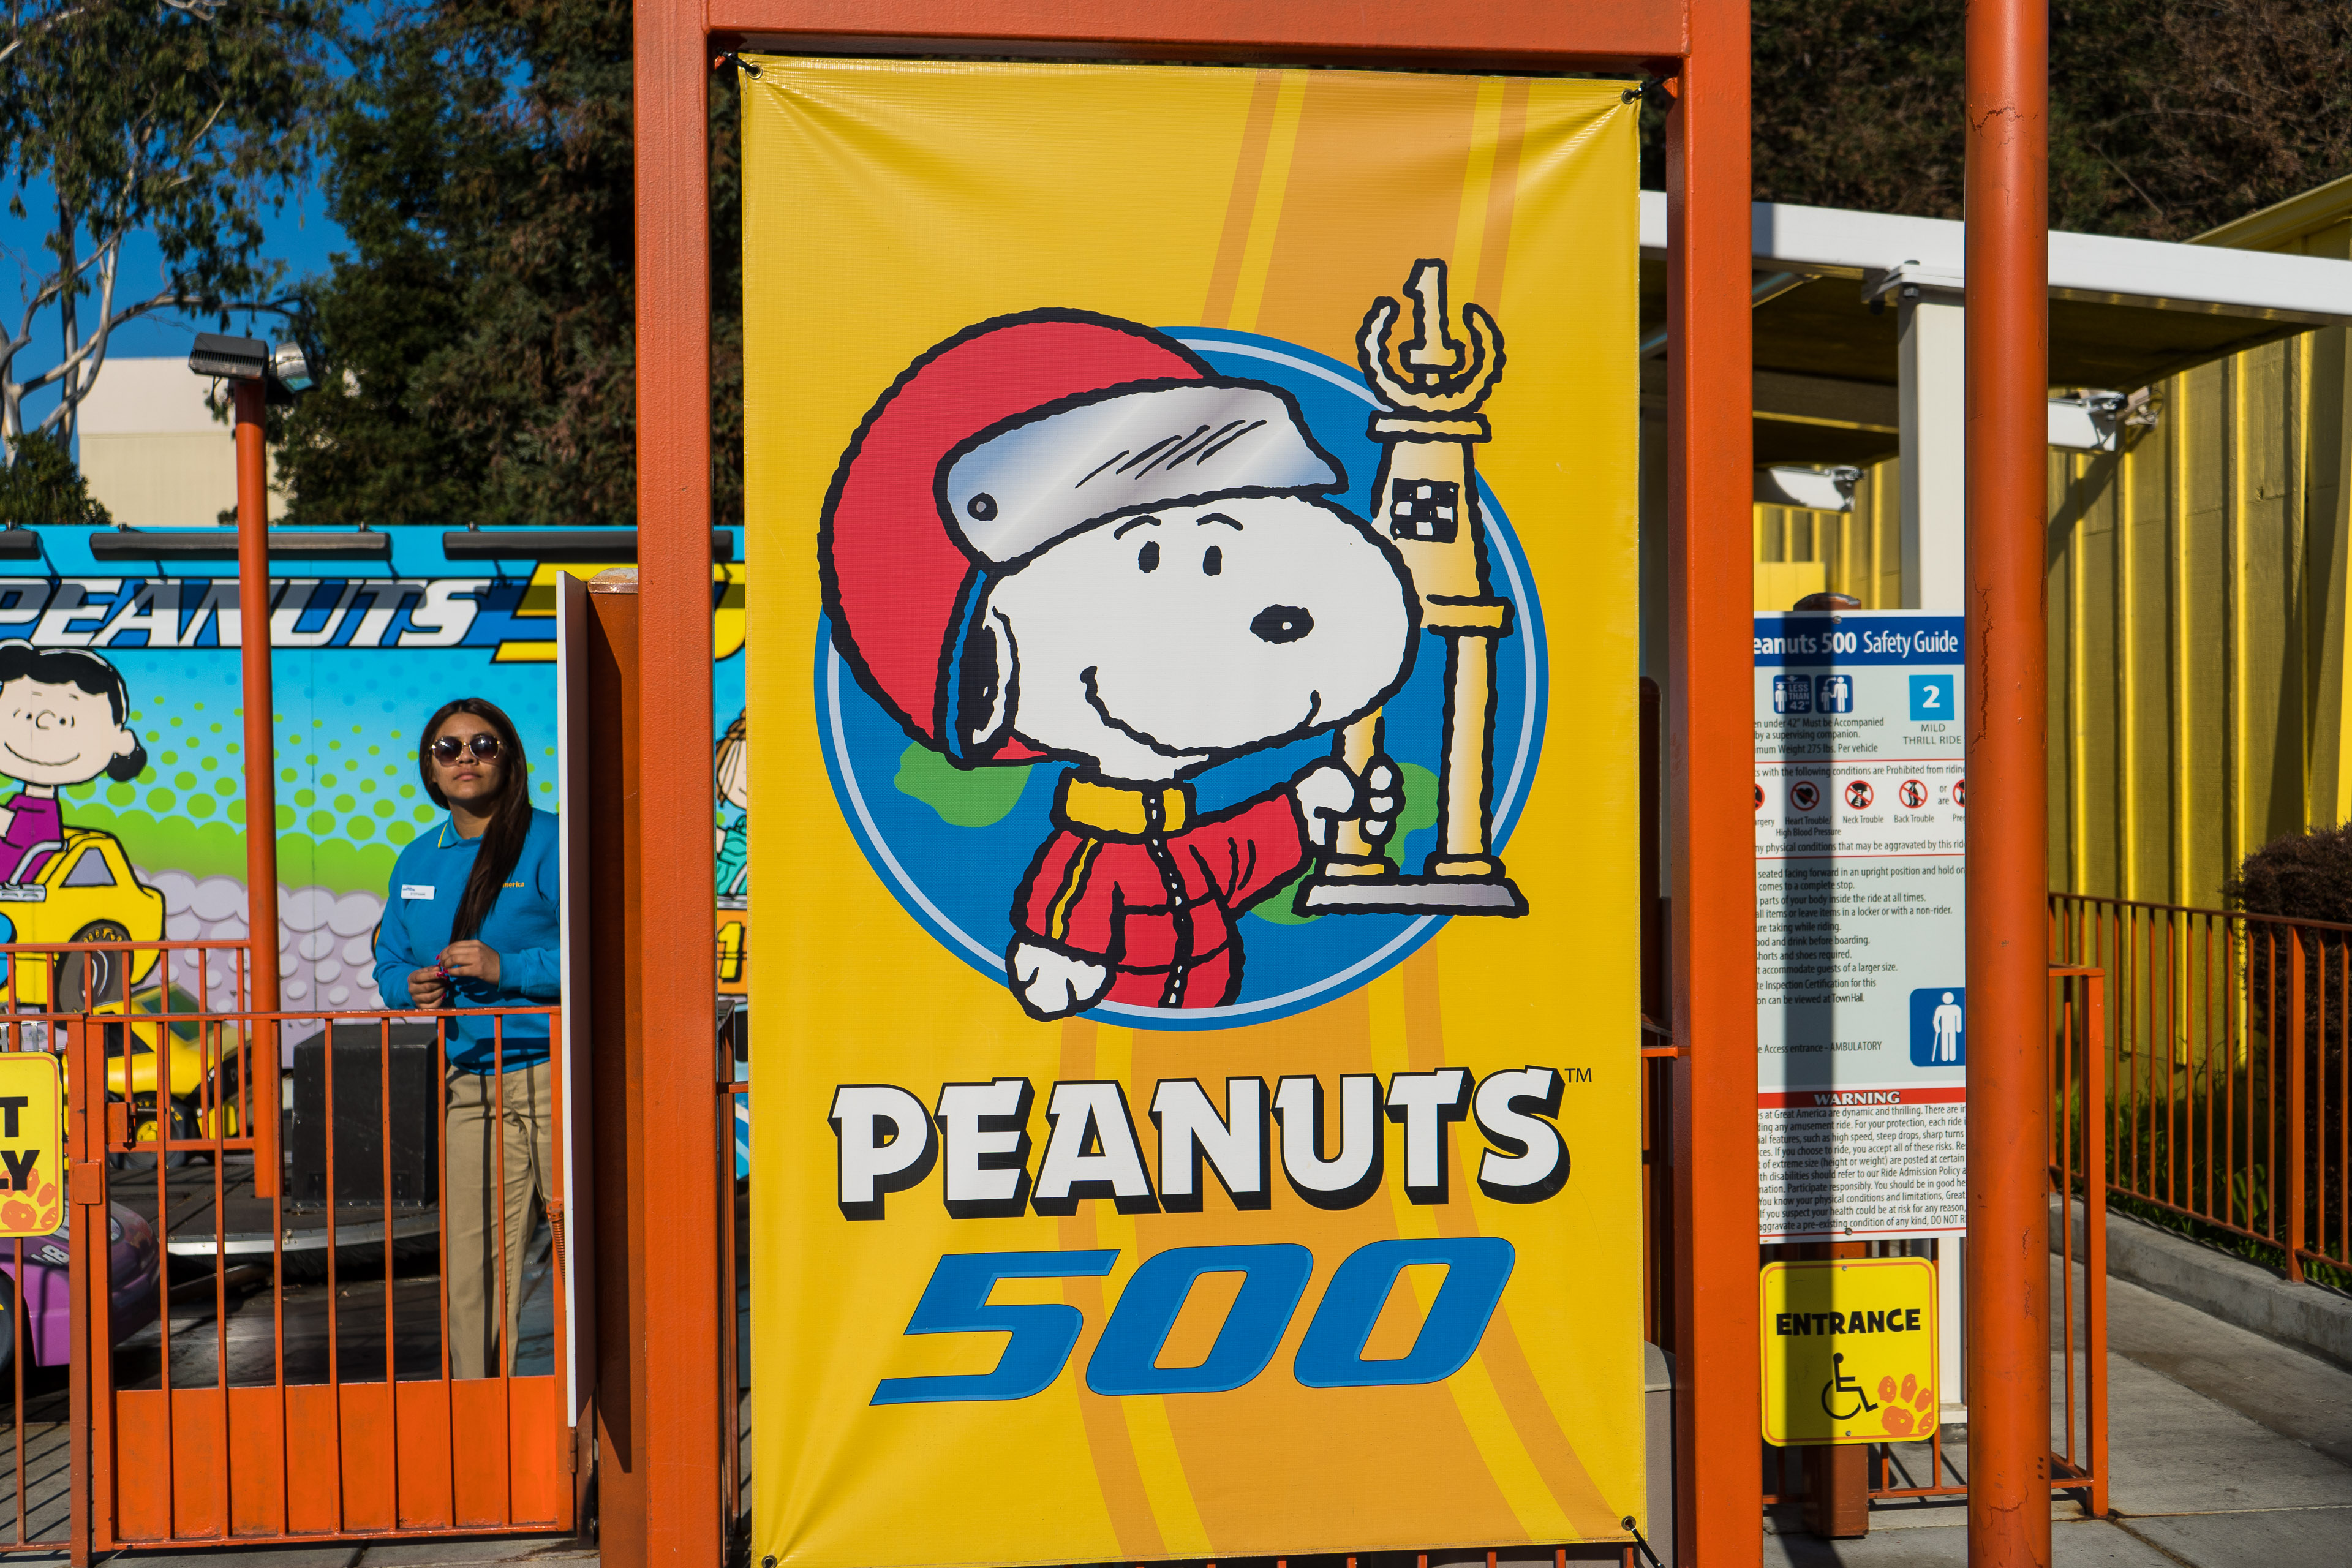 Peanuts 500